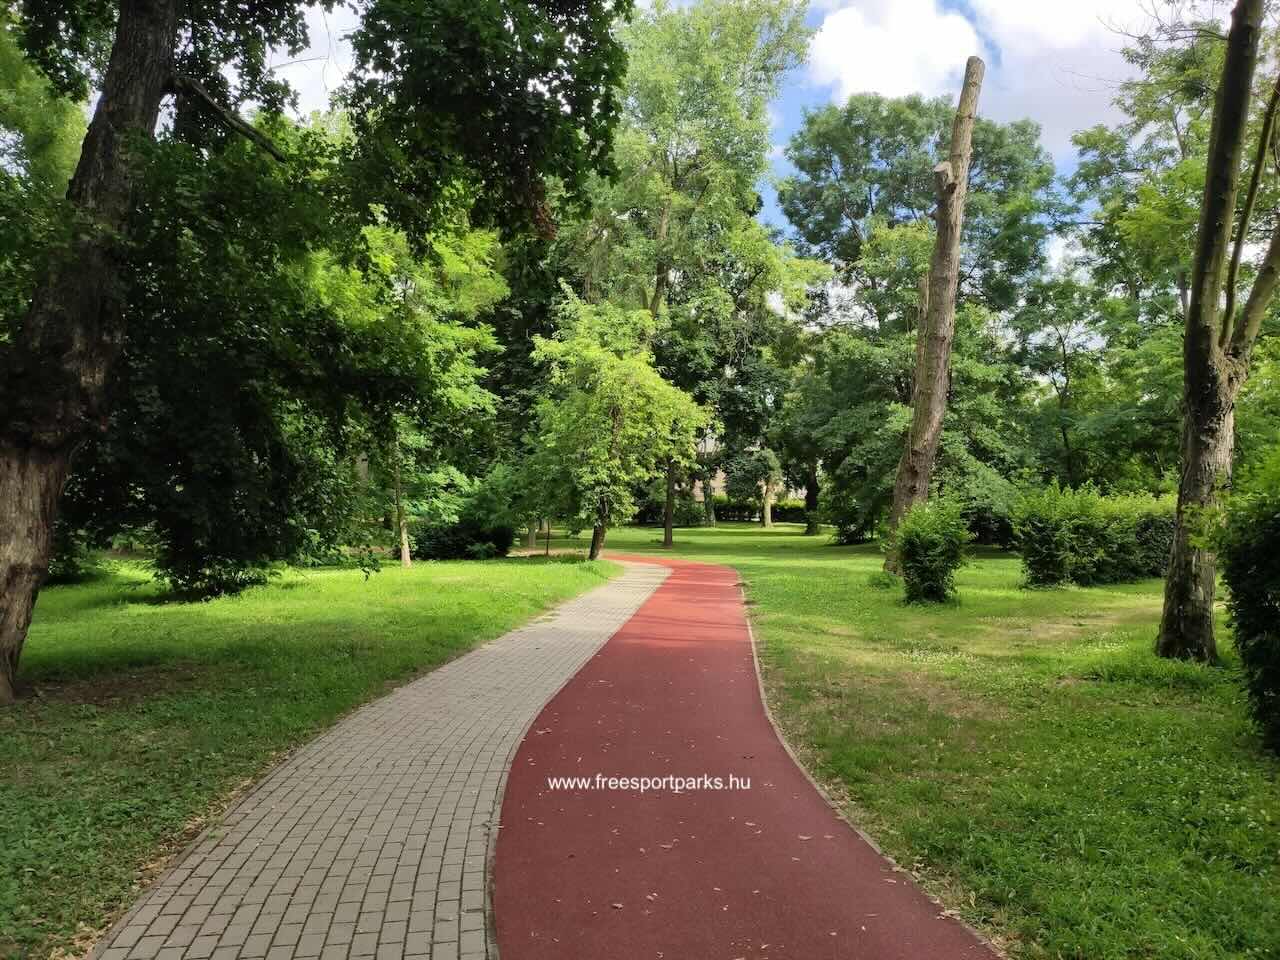 térkövezett sétaúttal kanyarog a rekortán futópálya a fák között, Dombóvár Szigeterdő - Free Sport Parks Blog